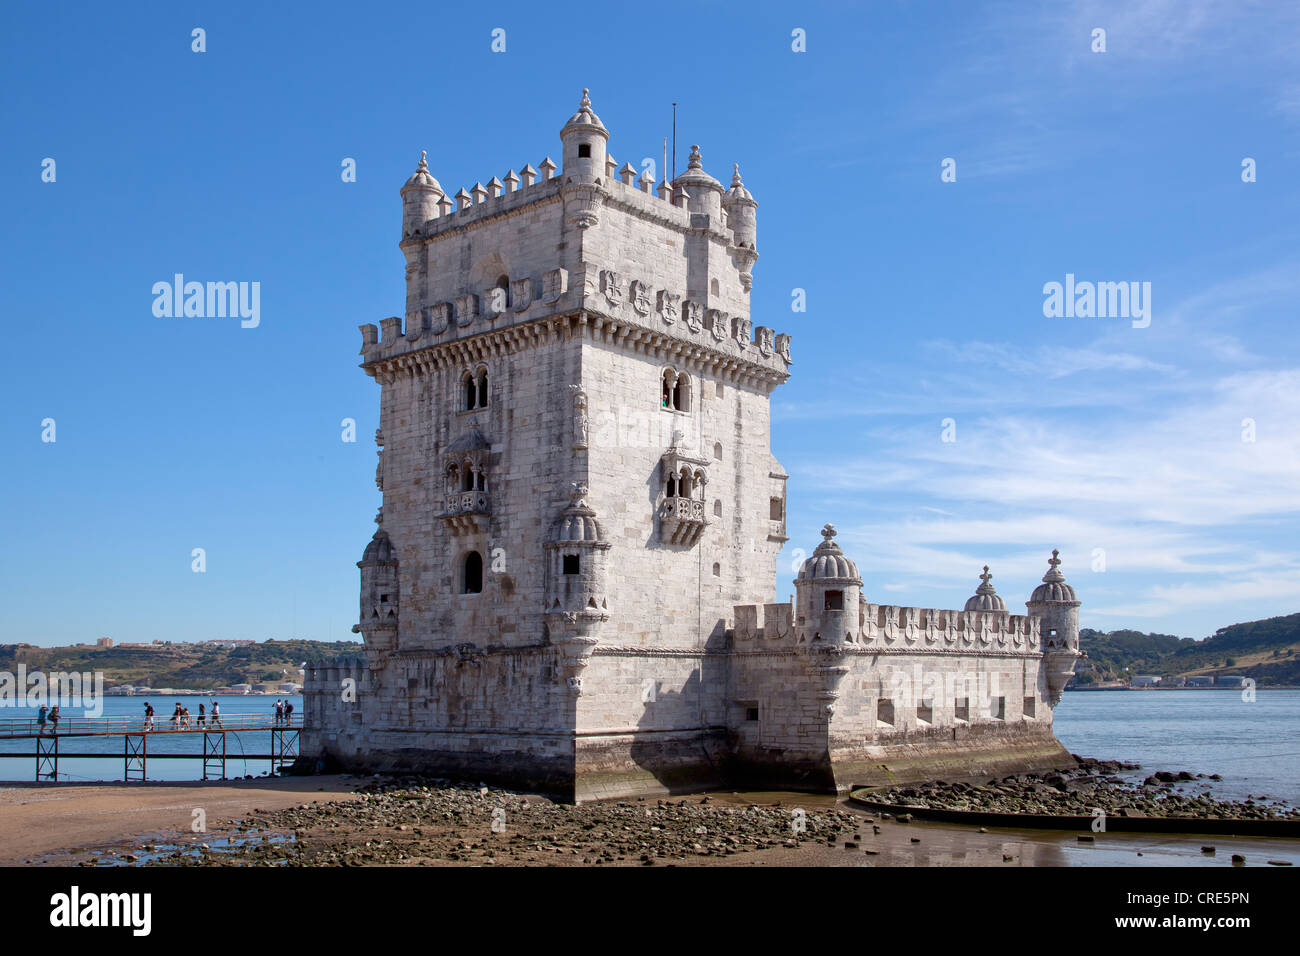 La Torre de Belem, las fortificaciones del siglo XVI, Sitio del Patrimonio Mundial de la UNESCO, en la desembocadura del río en el Río Tejo. Foto de stock